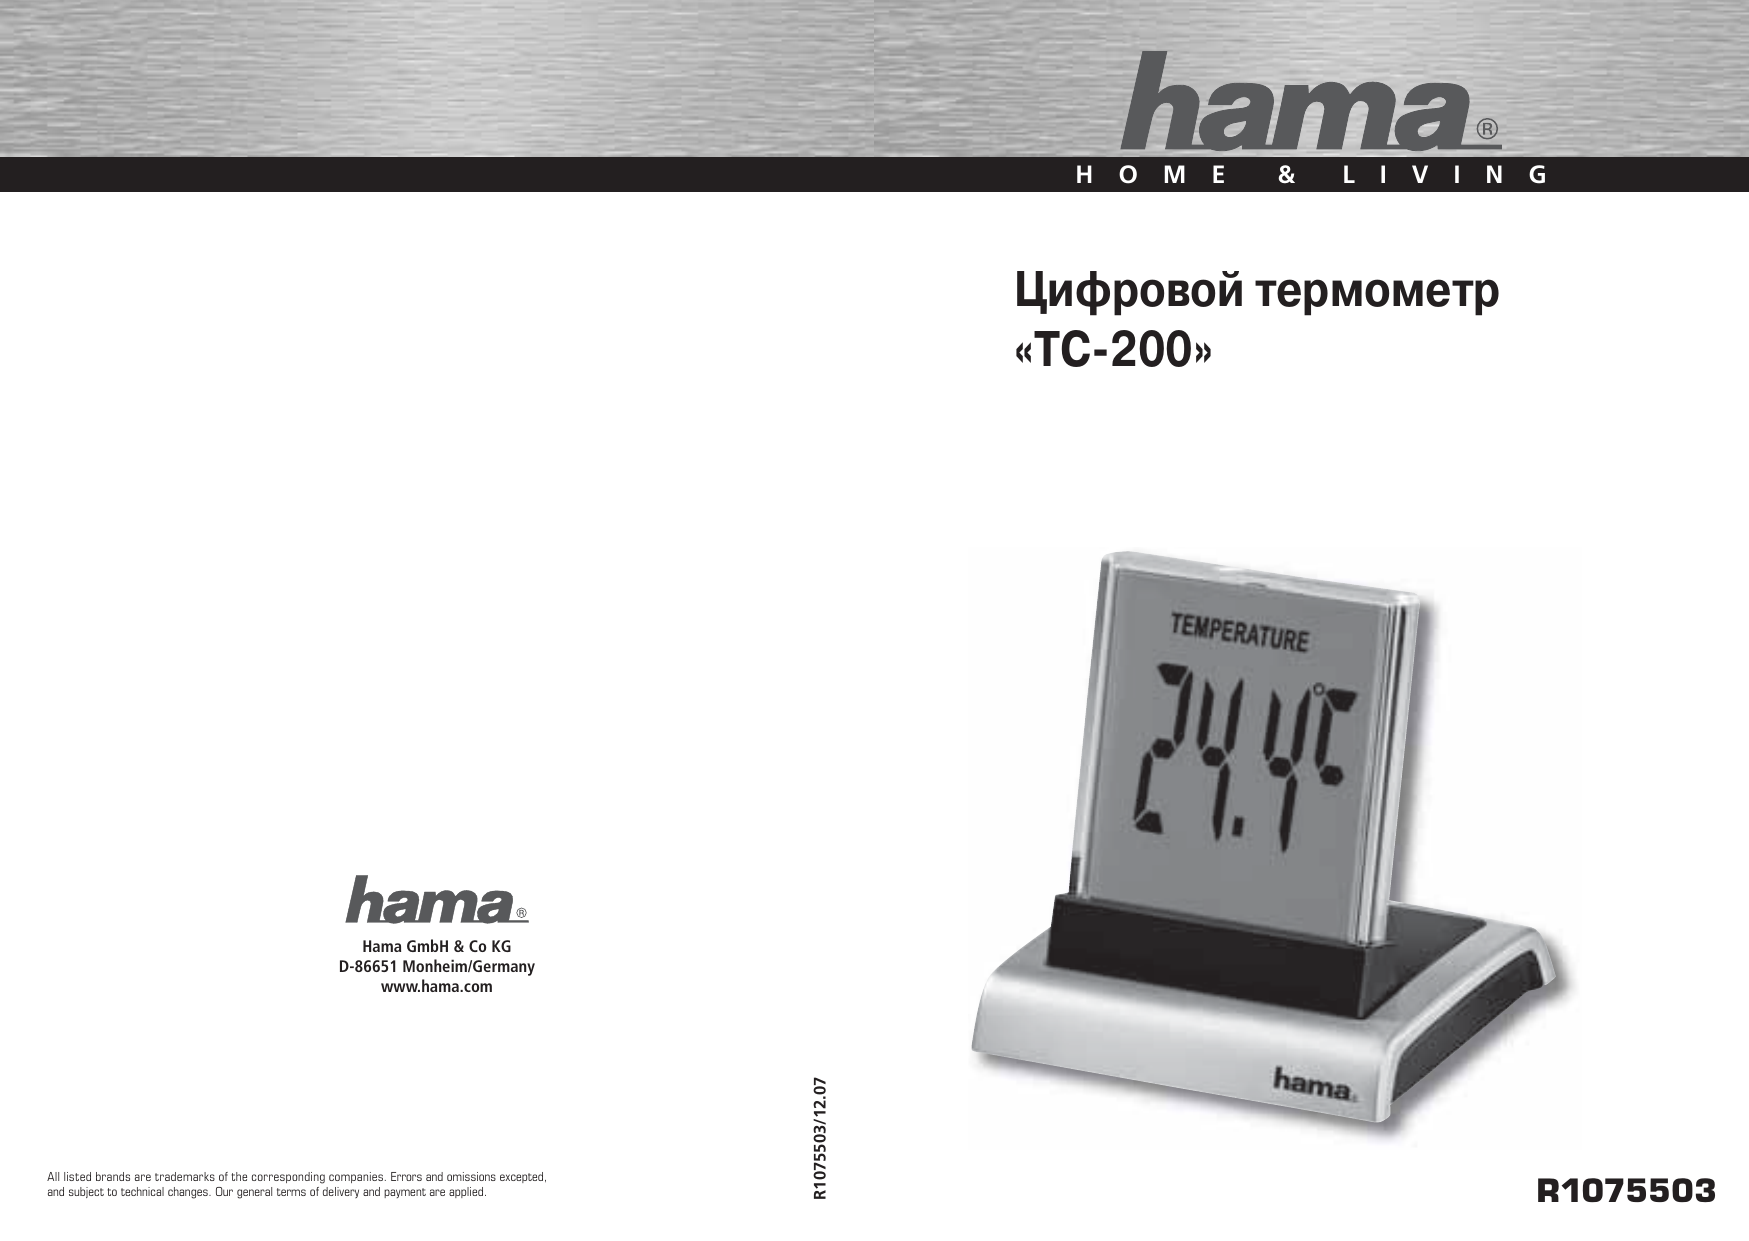 Digital thermometer инструкция на русском языке фото и описание